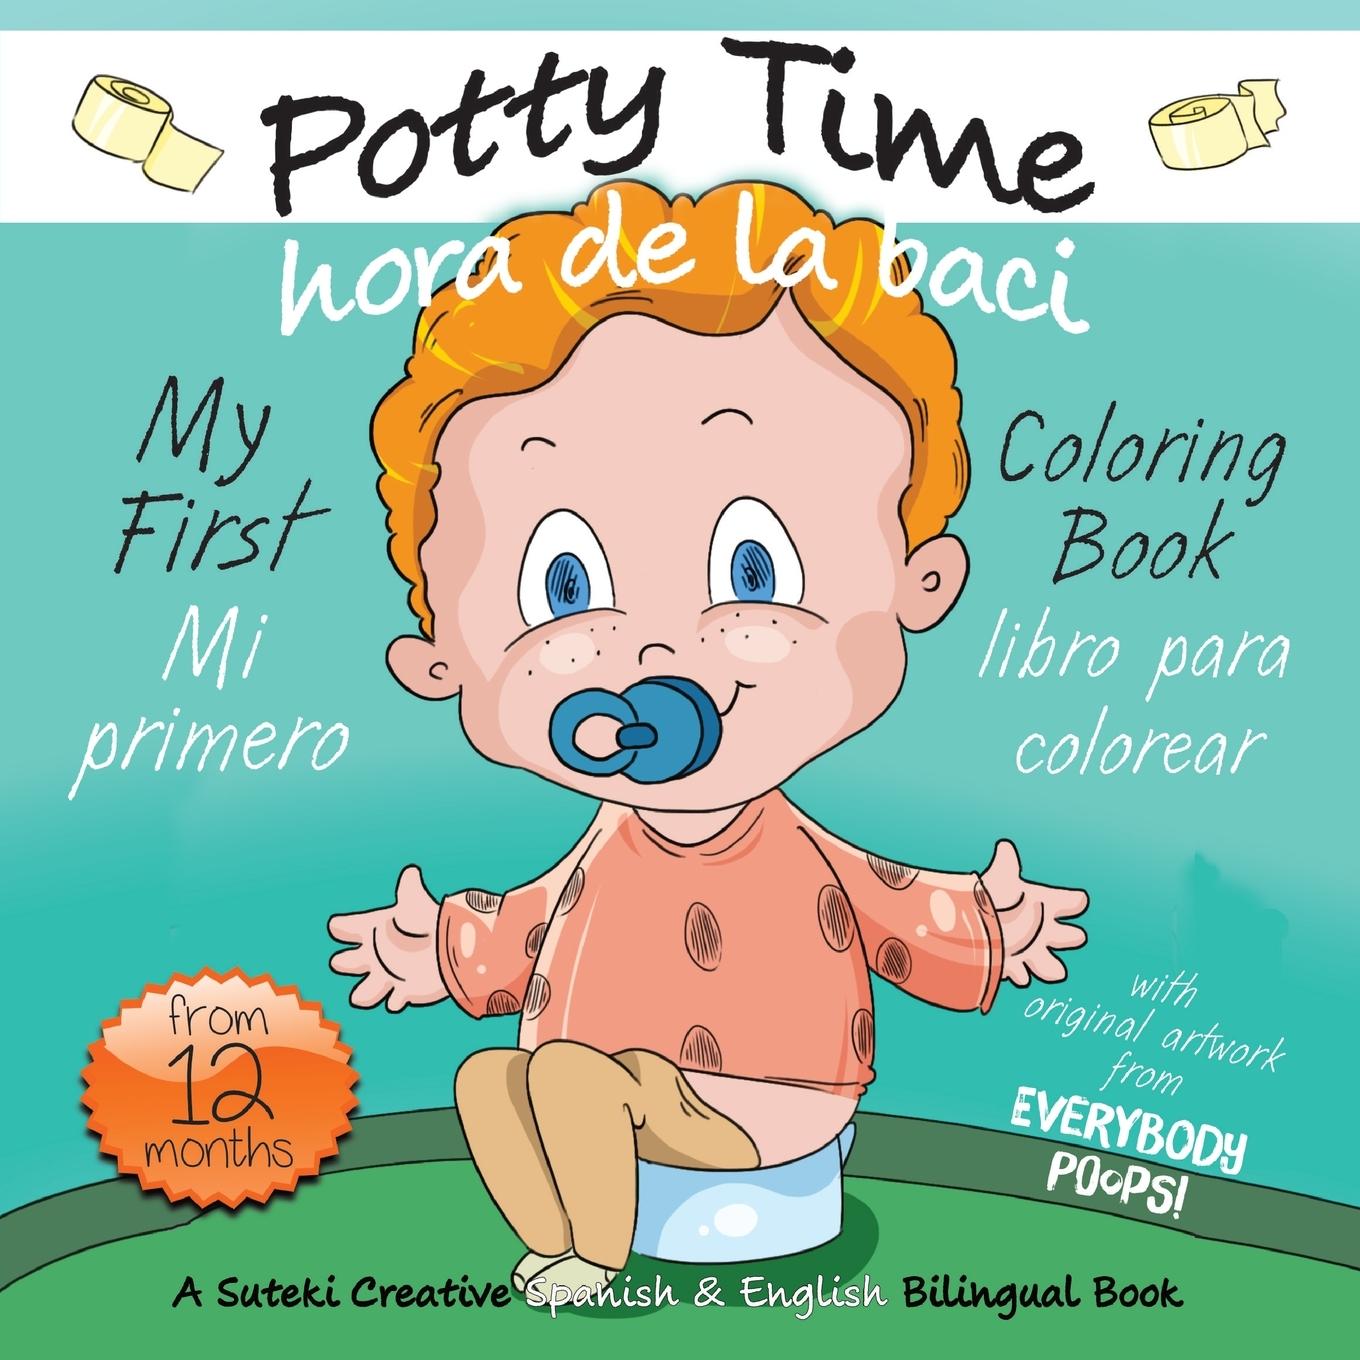 Kniha My First Potty Time Coloring Book / Mi primero hora de la baci libro para colorear 